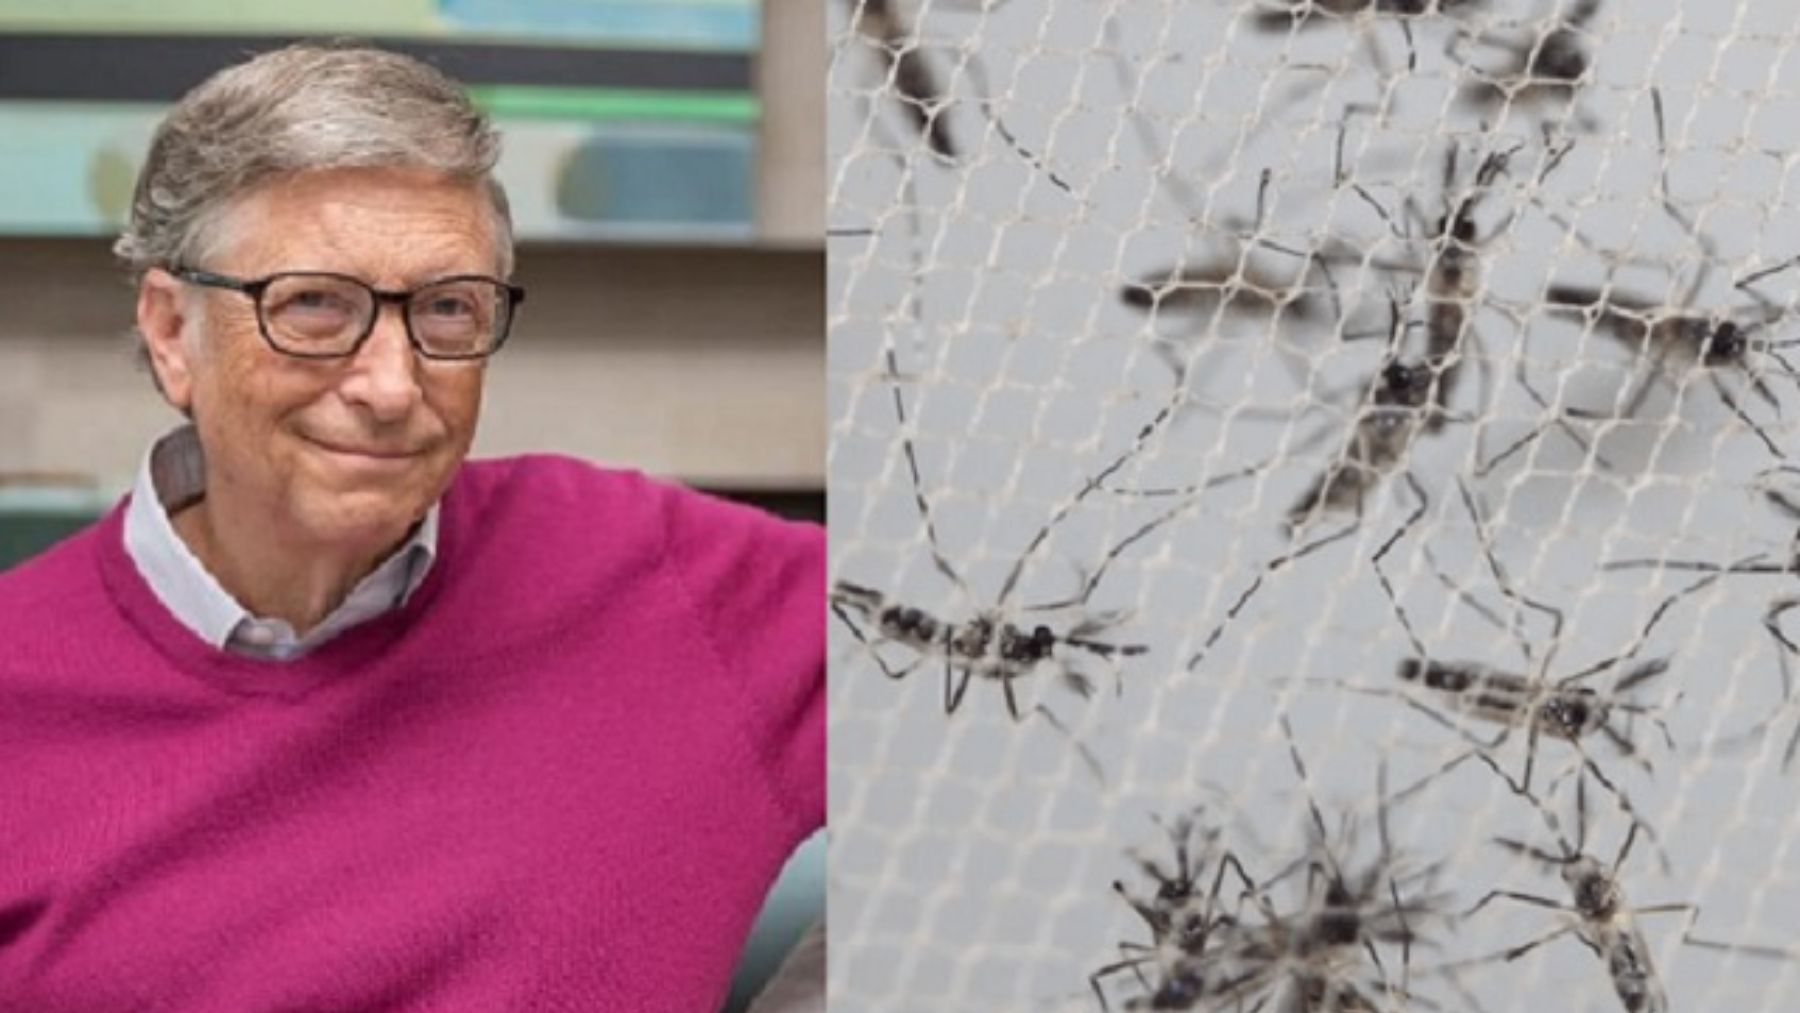 Descubre por qué Bill Gates tiene una granja de mosquitos